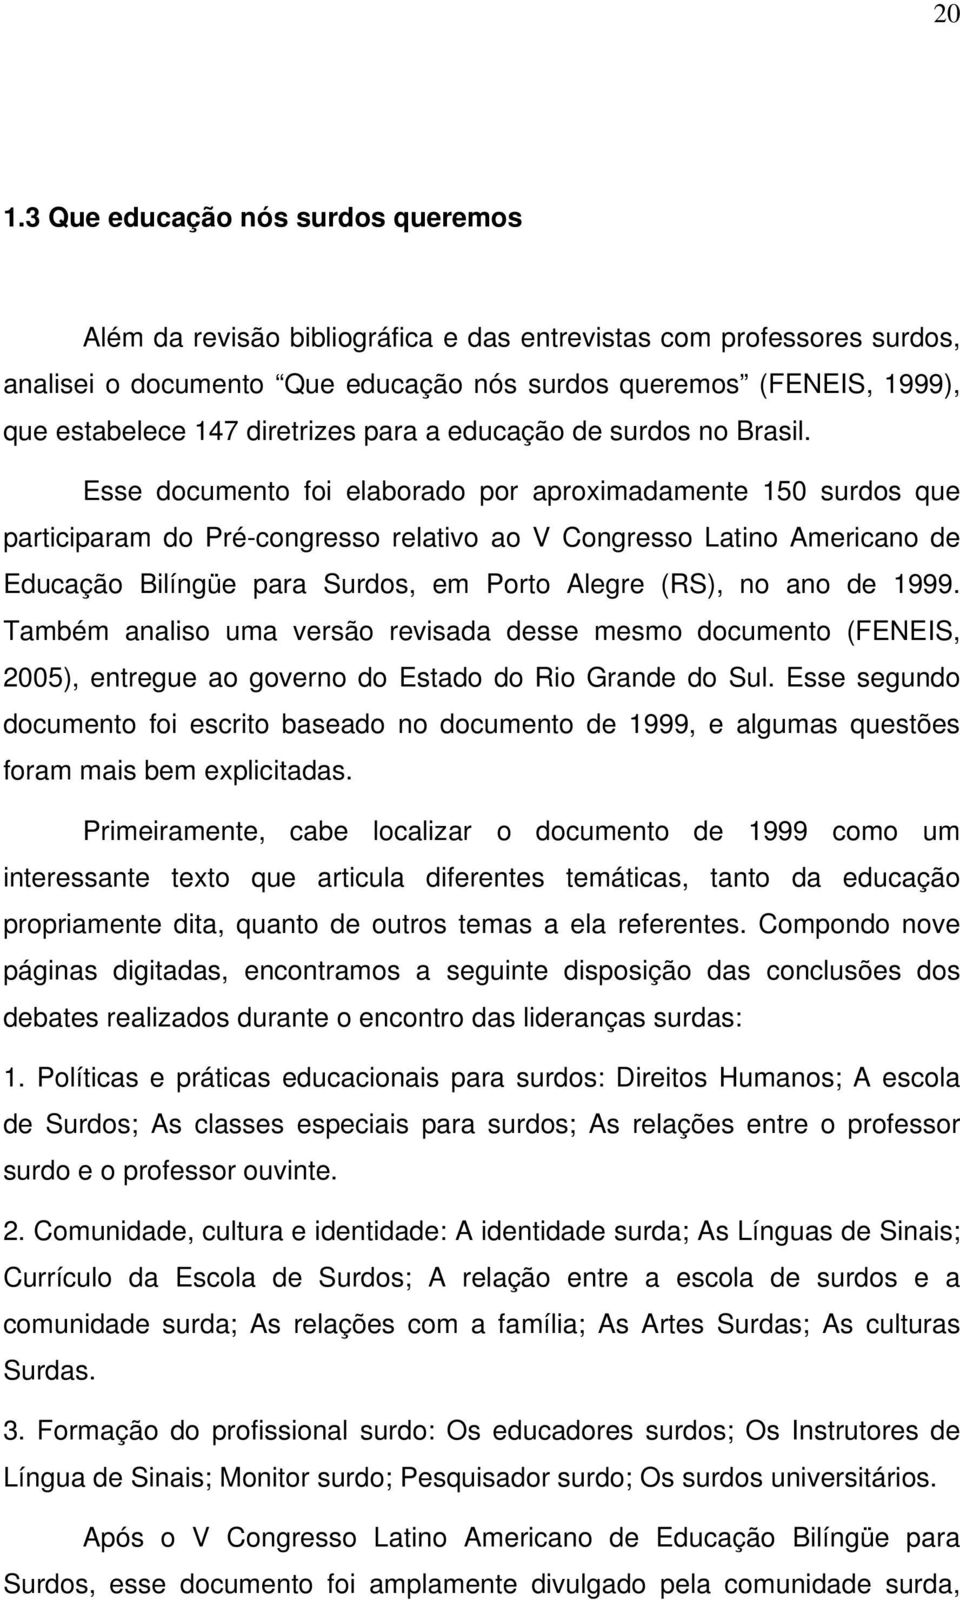 Esse documento foi elaborado por aproximadamente 150 surdos que participaram do Pré-congresso relativo ao V Congresso Latino Americano de Educação Bilíngüe para Surdos, em Porto Alegre (RS), no ano